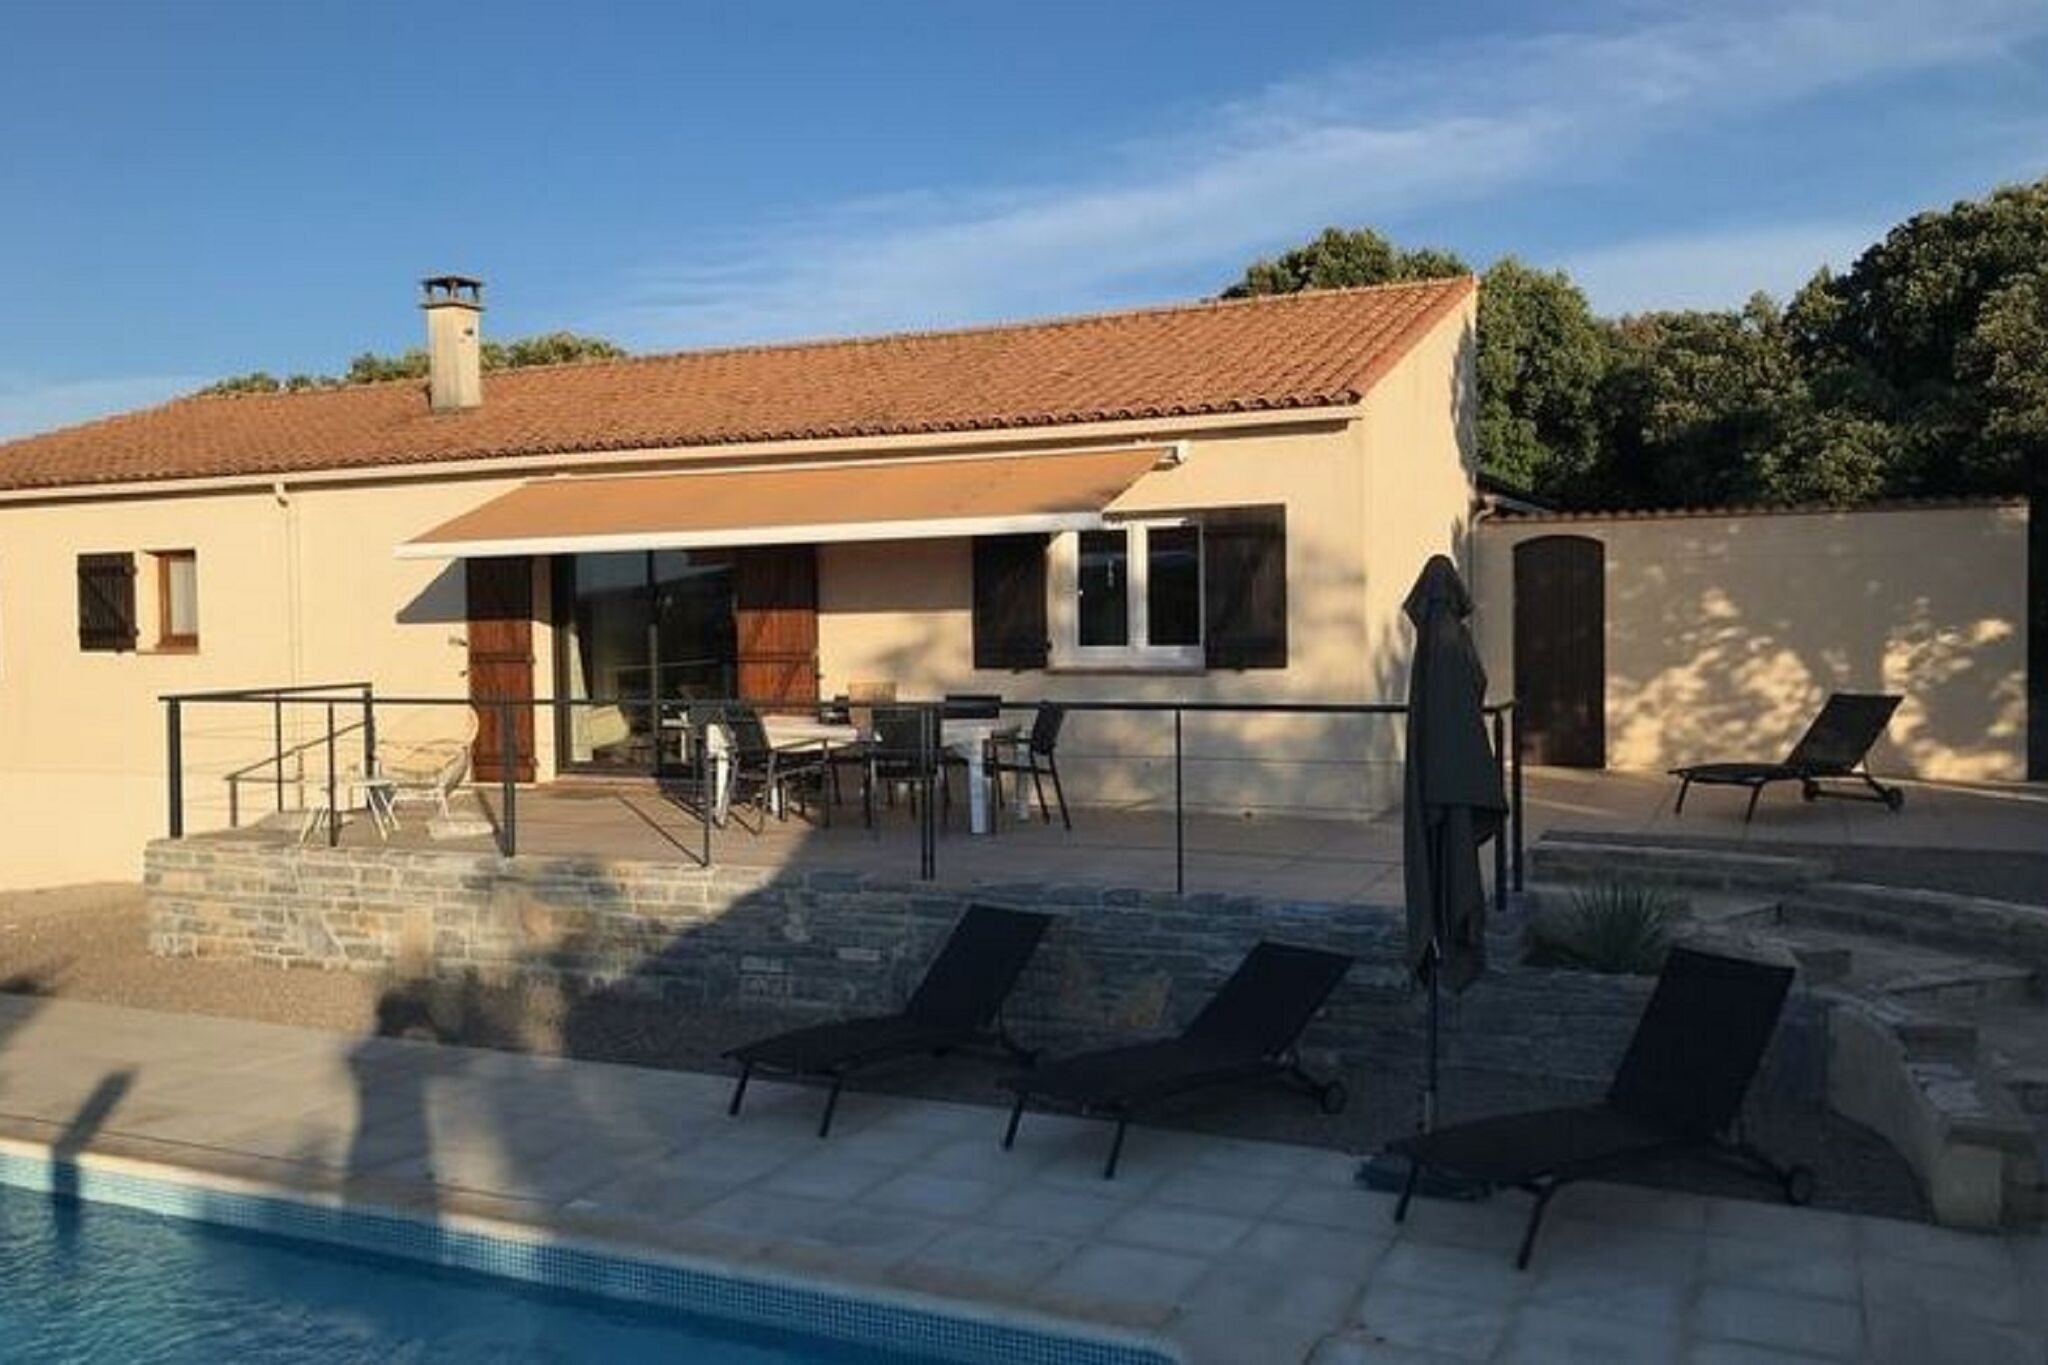 Gelijkvloerse woning in Languedoc-Roussillon met zwembad